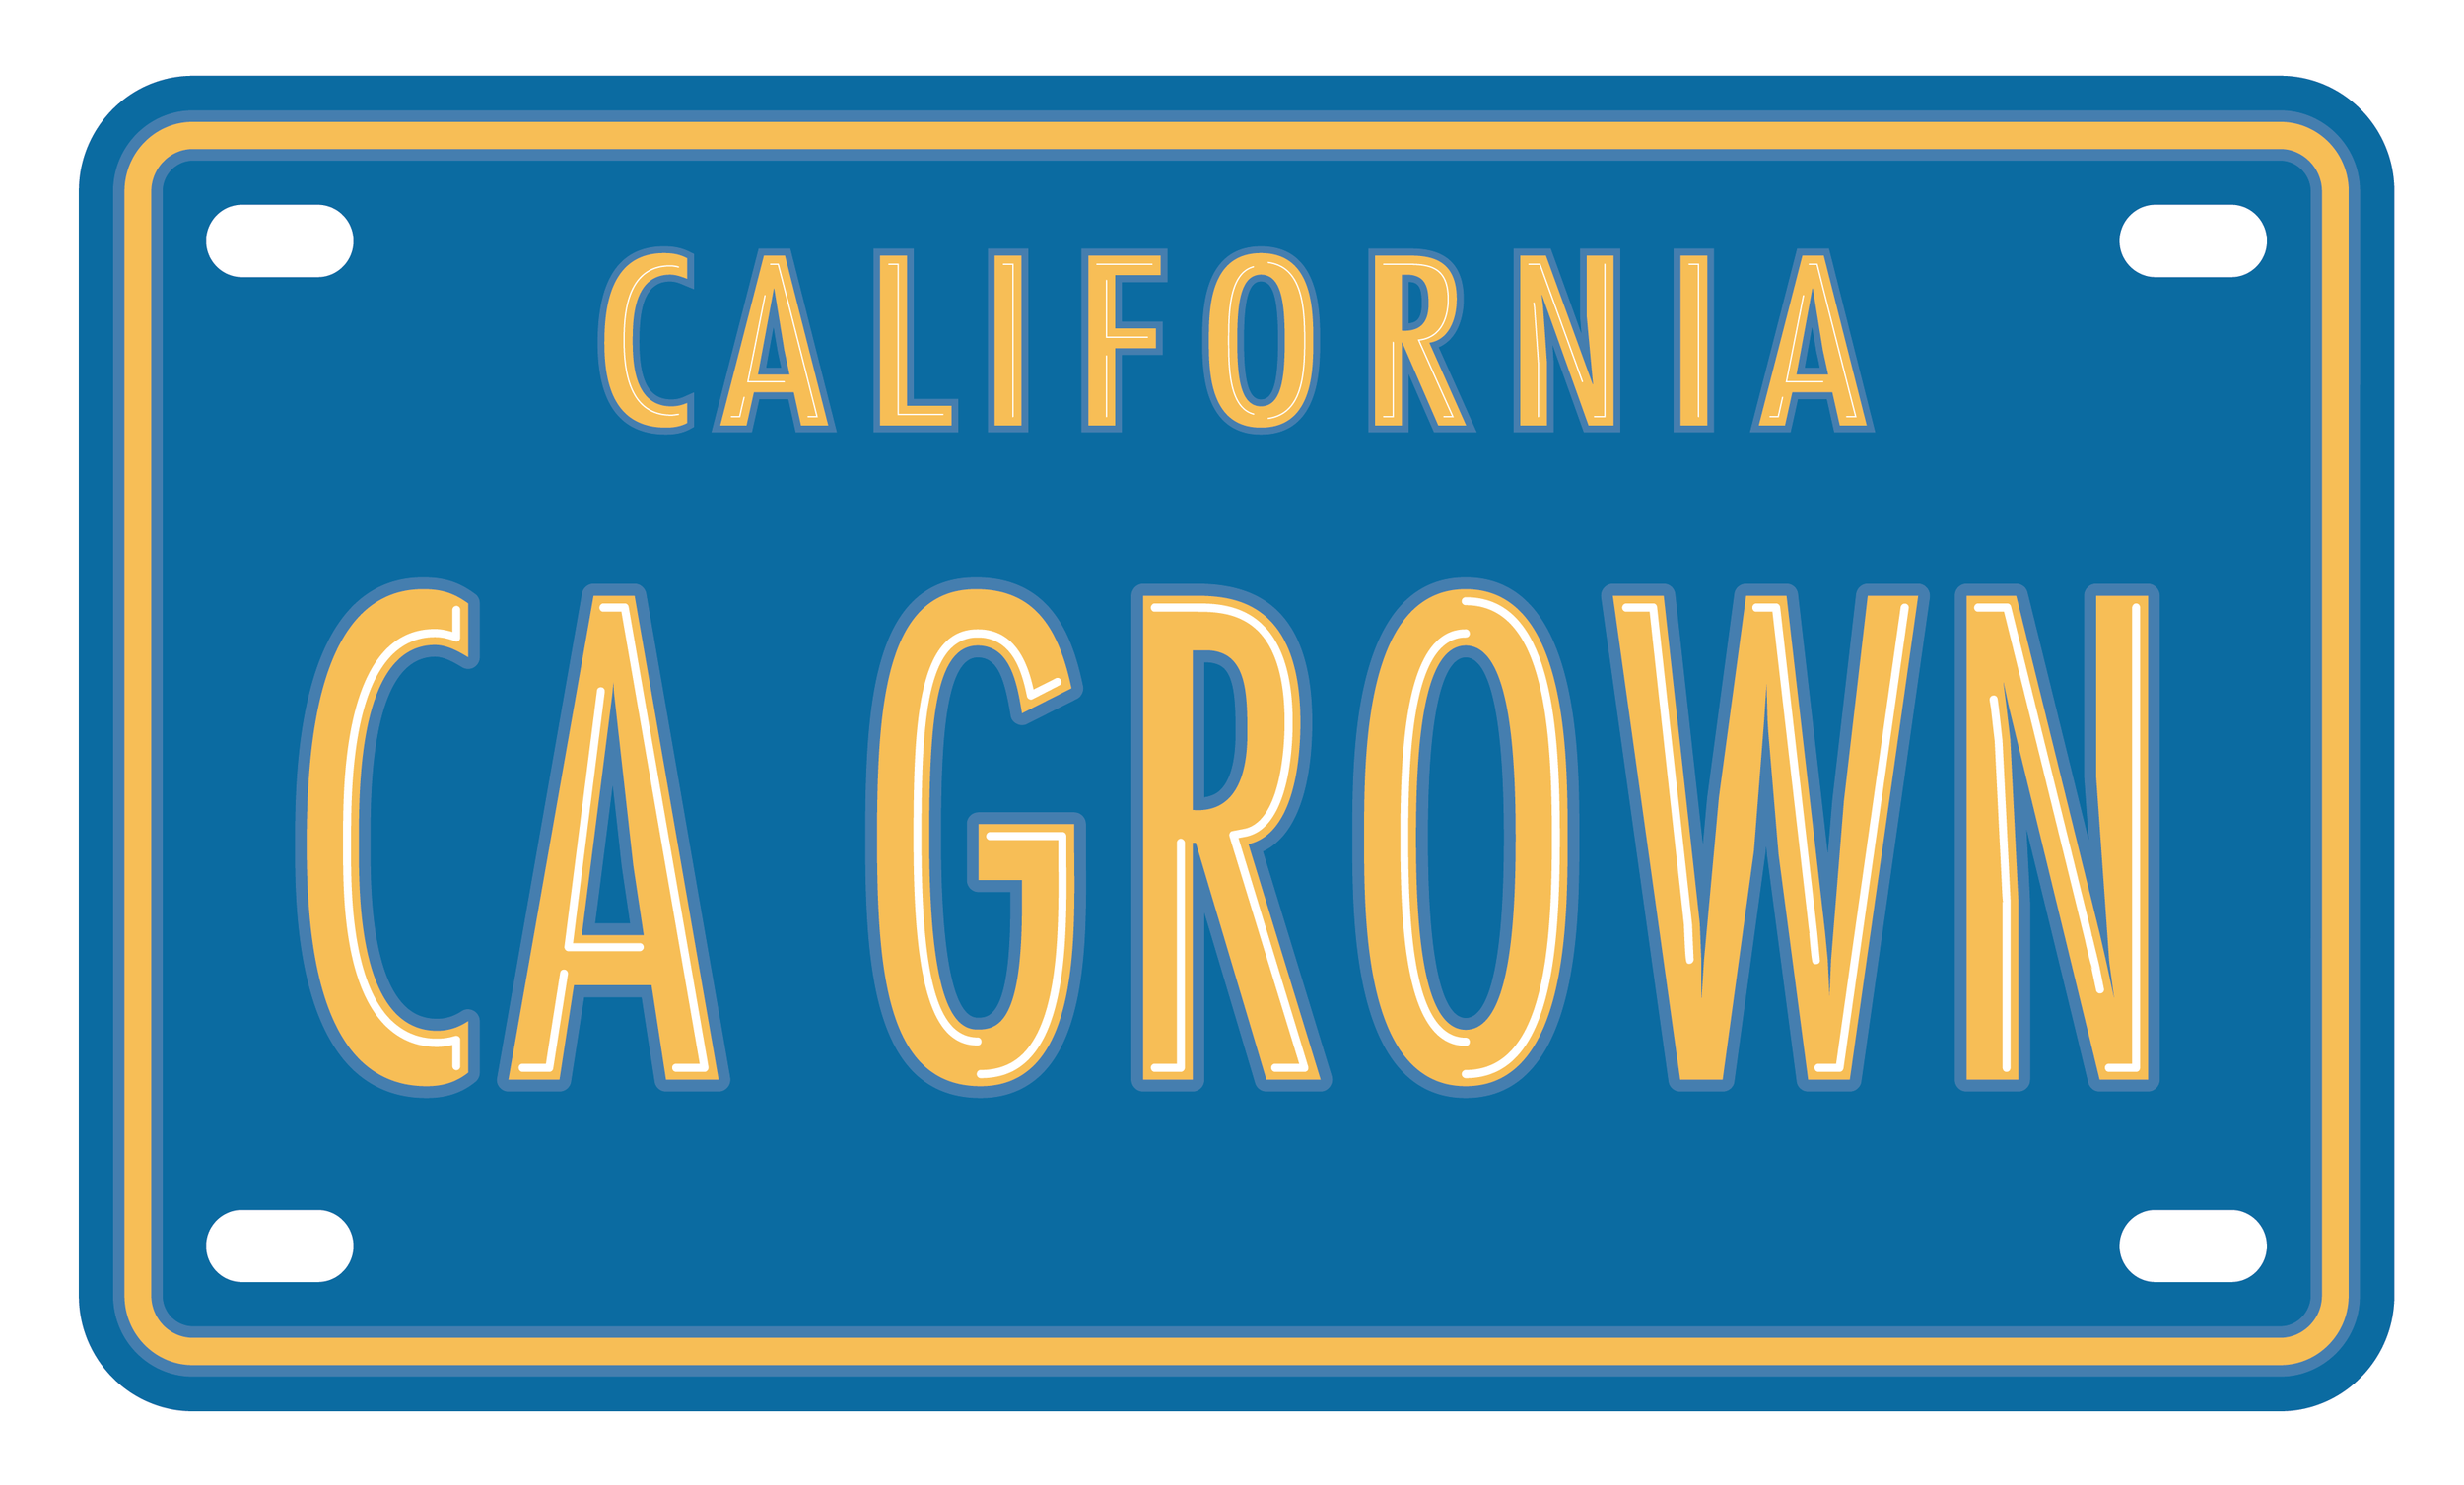 CALIFORNIA GROWN logo